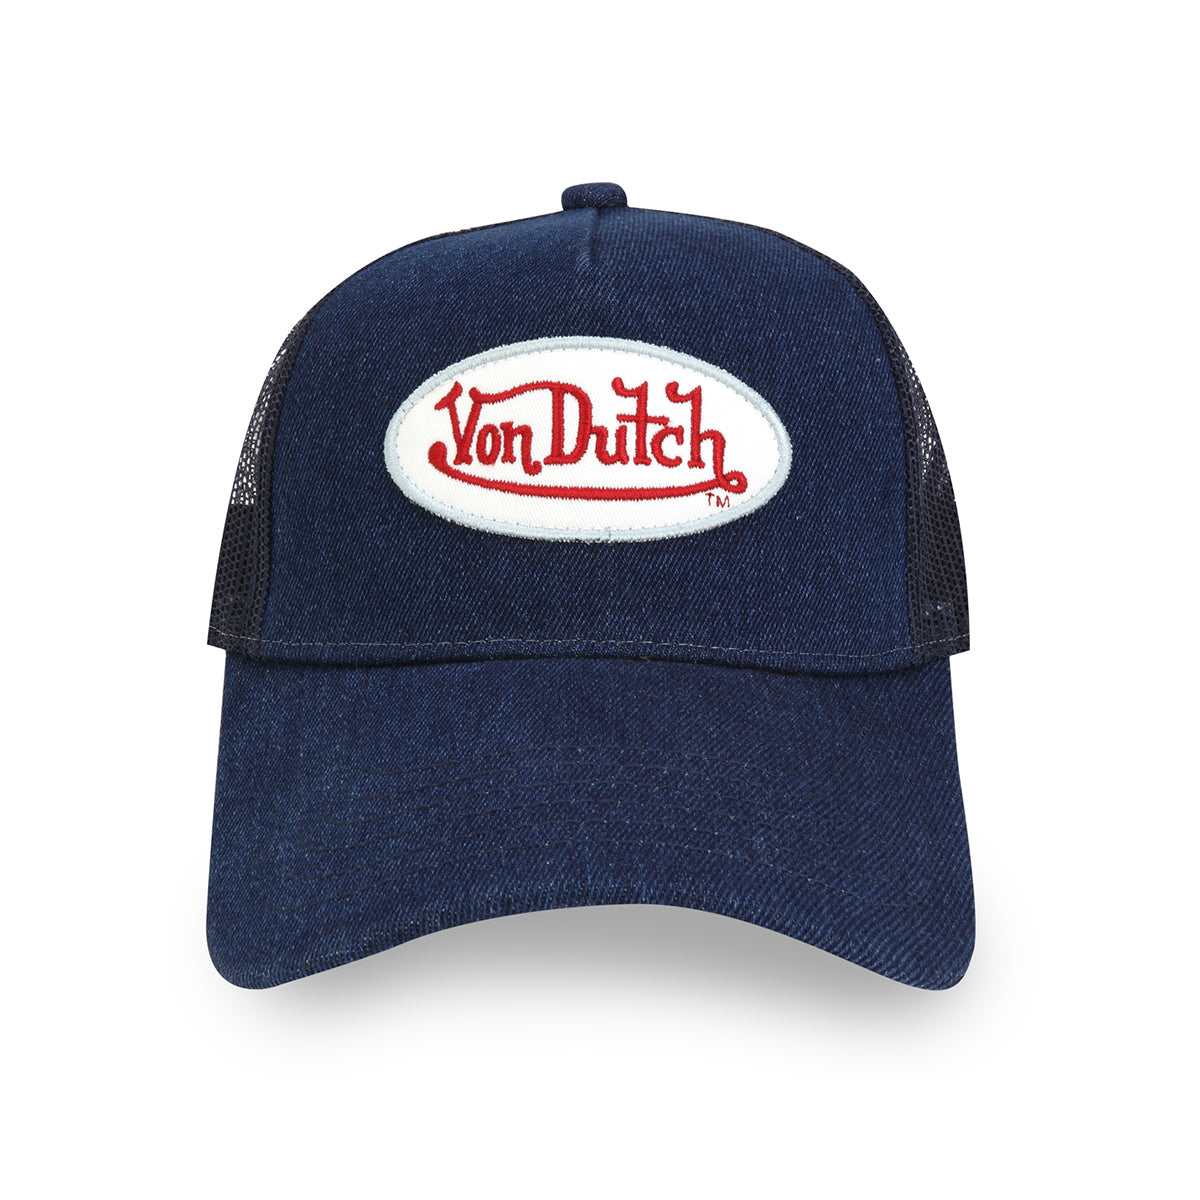 Von Dutch - Navy Denim With Logo Trucker Hat (Navy) – Octane